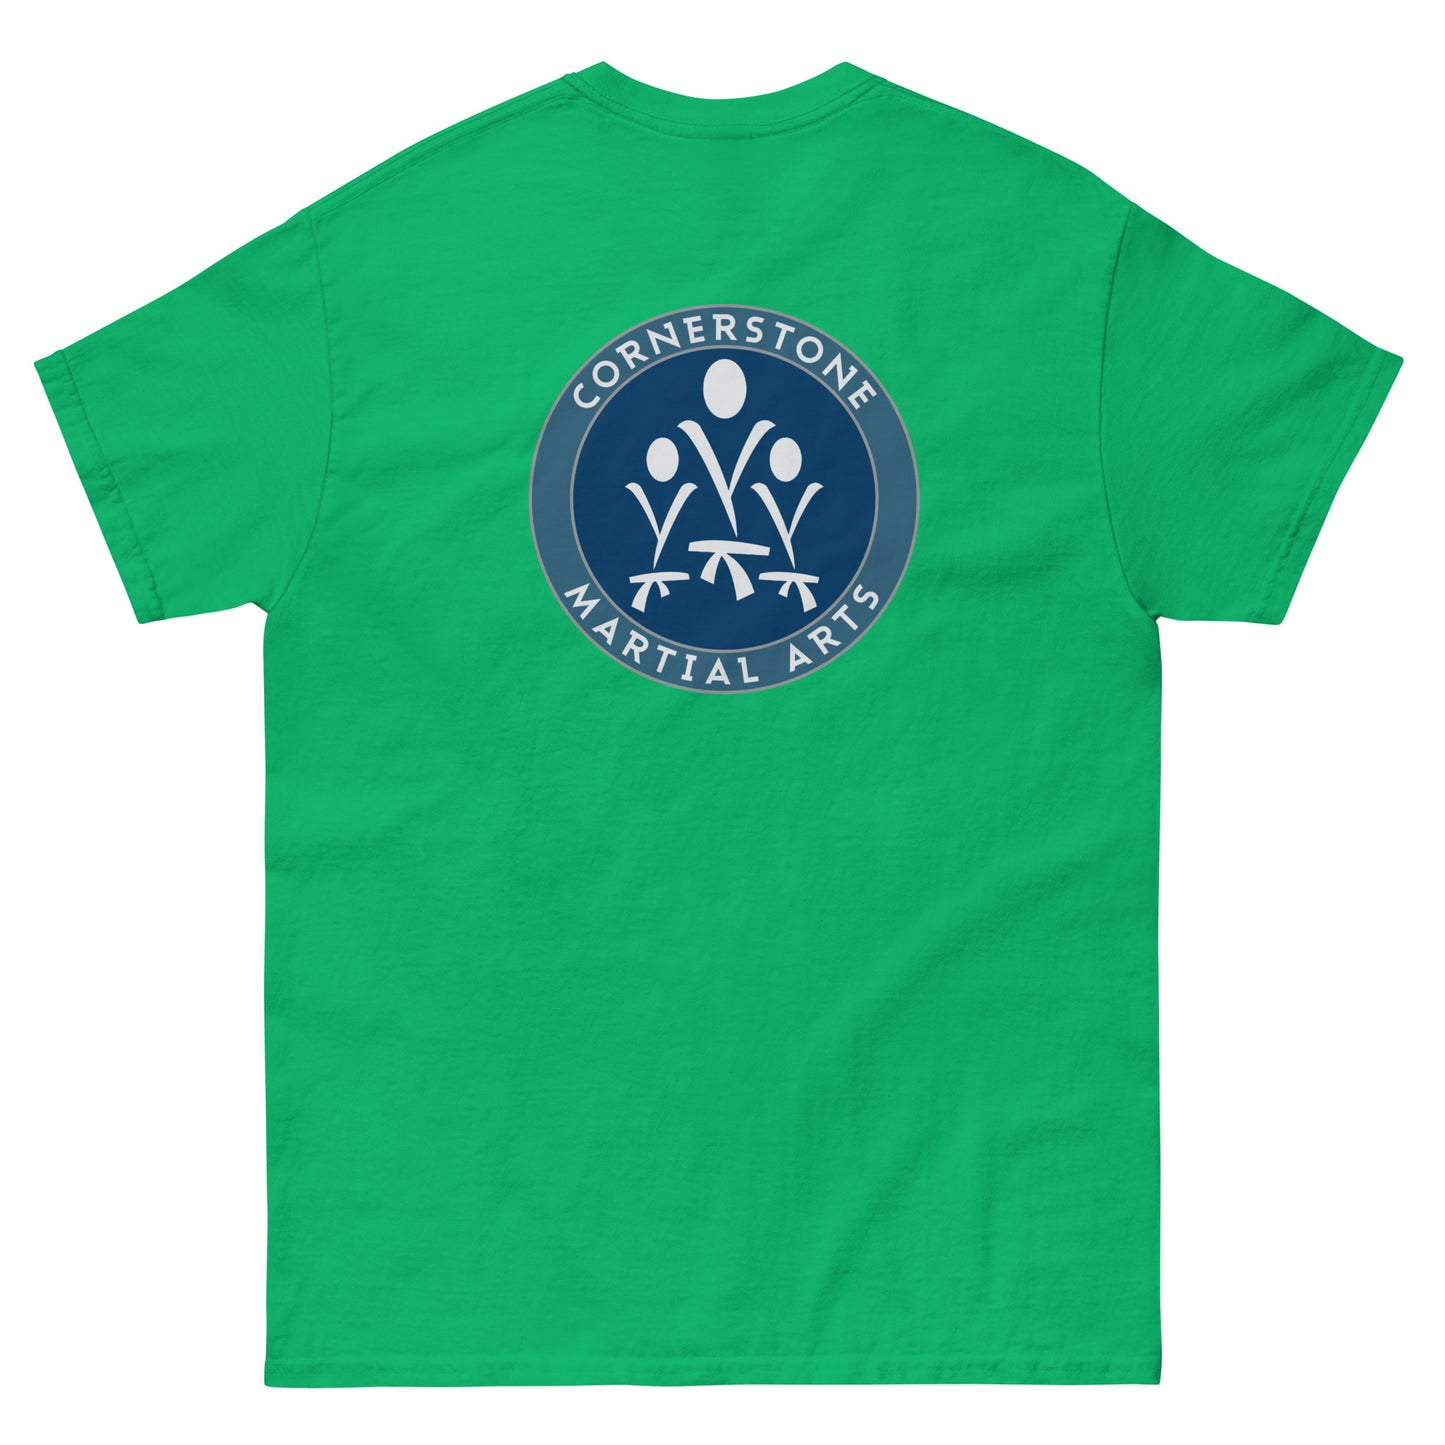 Green Belt Unisex cotton T-Shirt